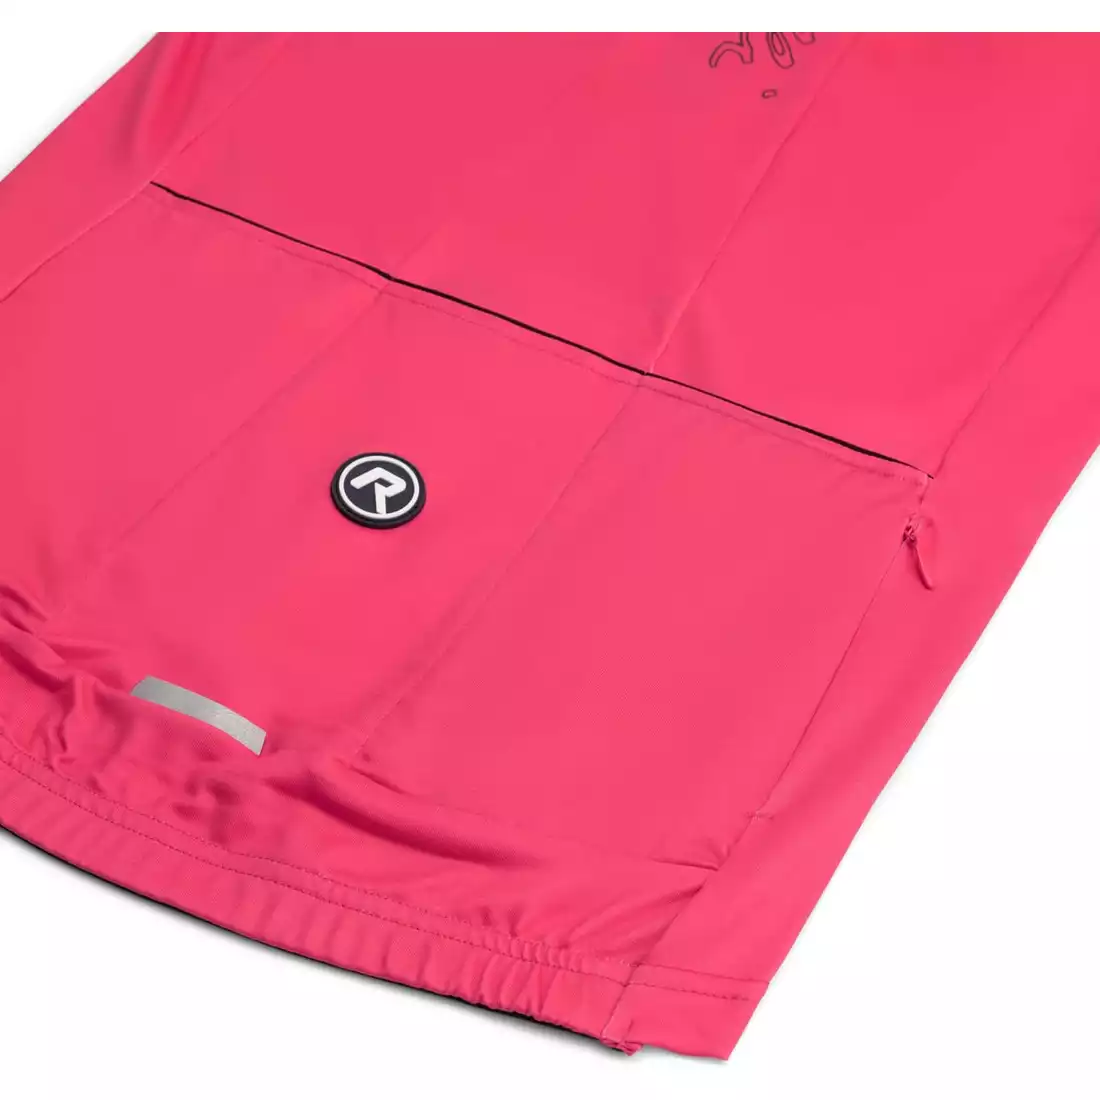 ROGELLI ESSENTIAL dámska zateplená cyklistická bunda ružovej farby